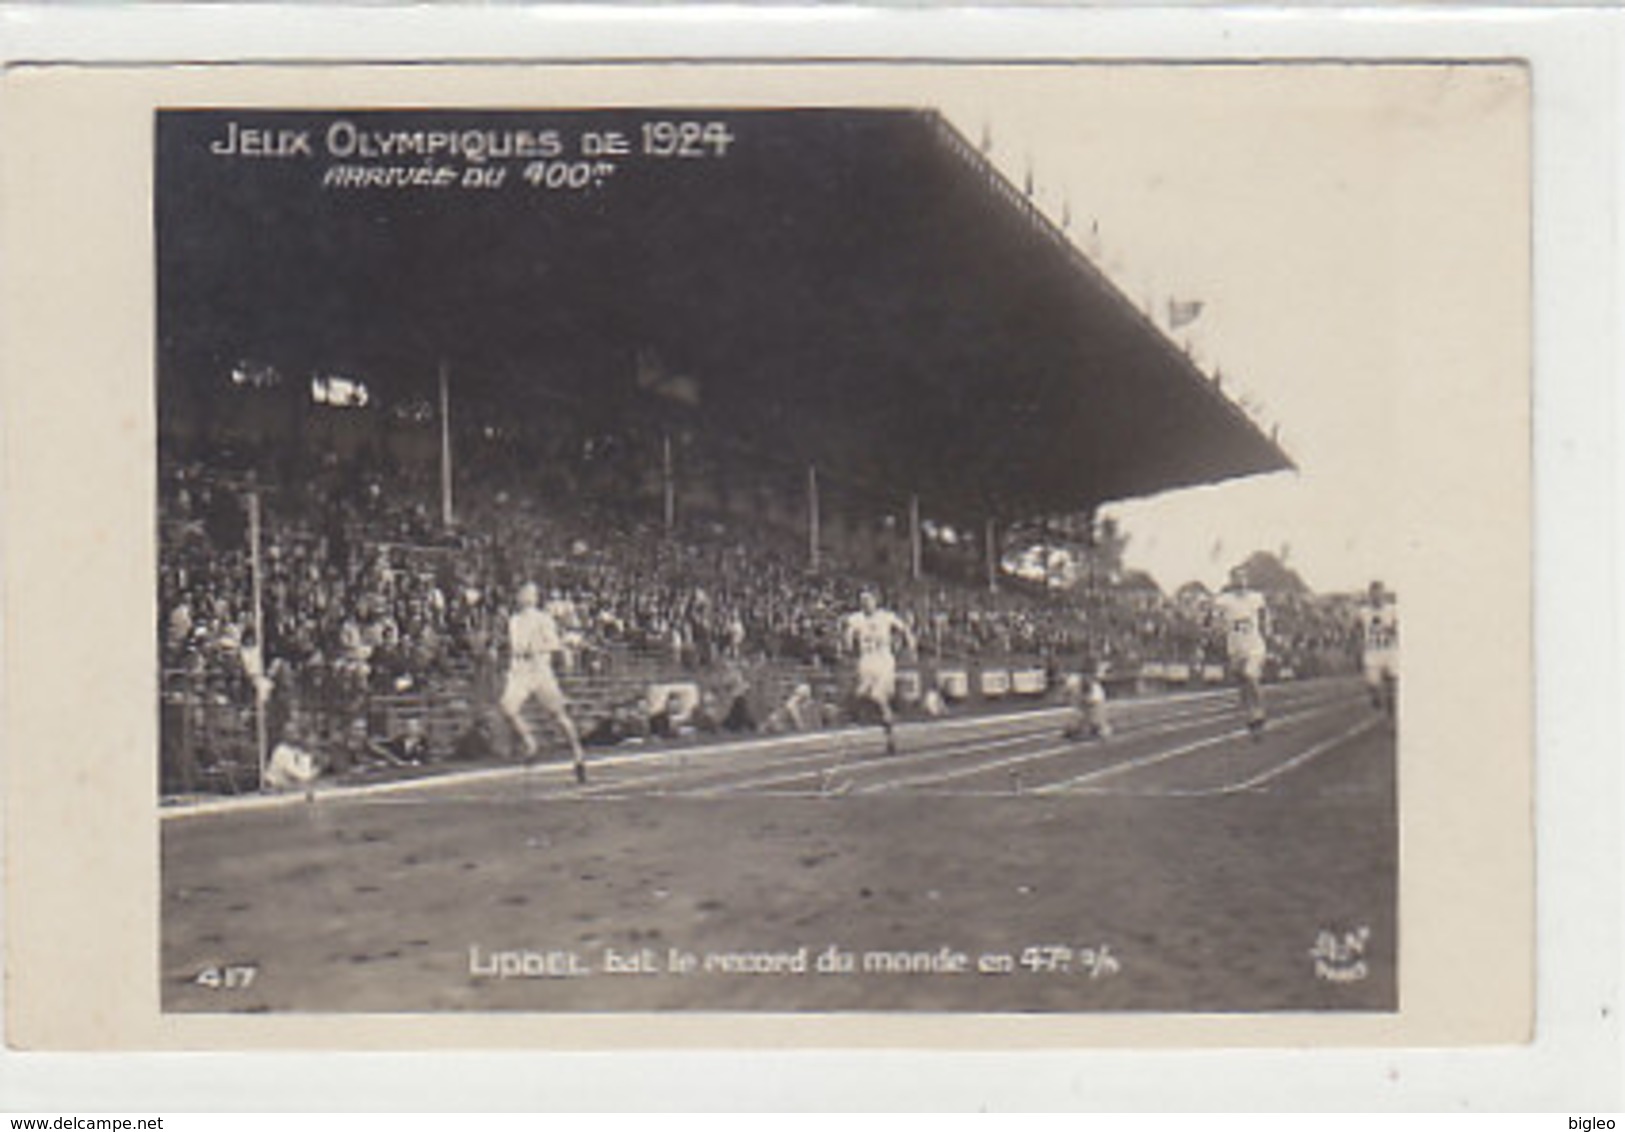 Jeux Olympiques 1924 - Arrivée Du 400m - Liddel Bat Le Record Du Monde - Carte Photo         (A-158-190723-160808))8)) - Giochi Olimpici